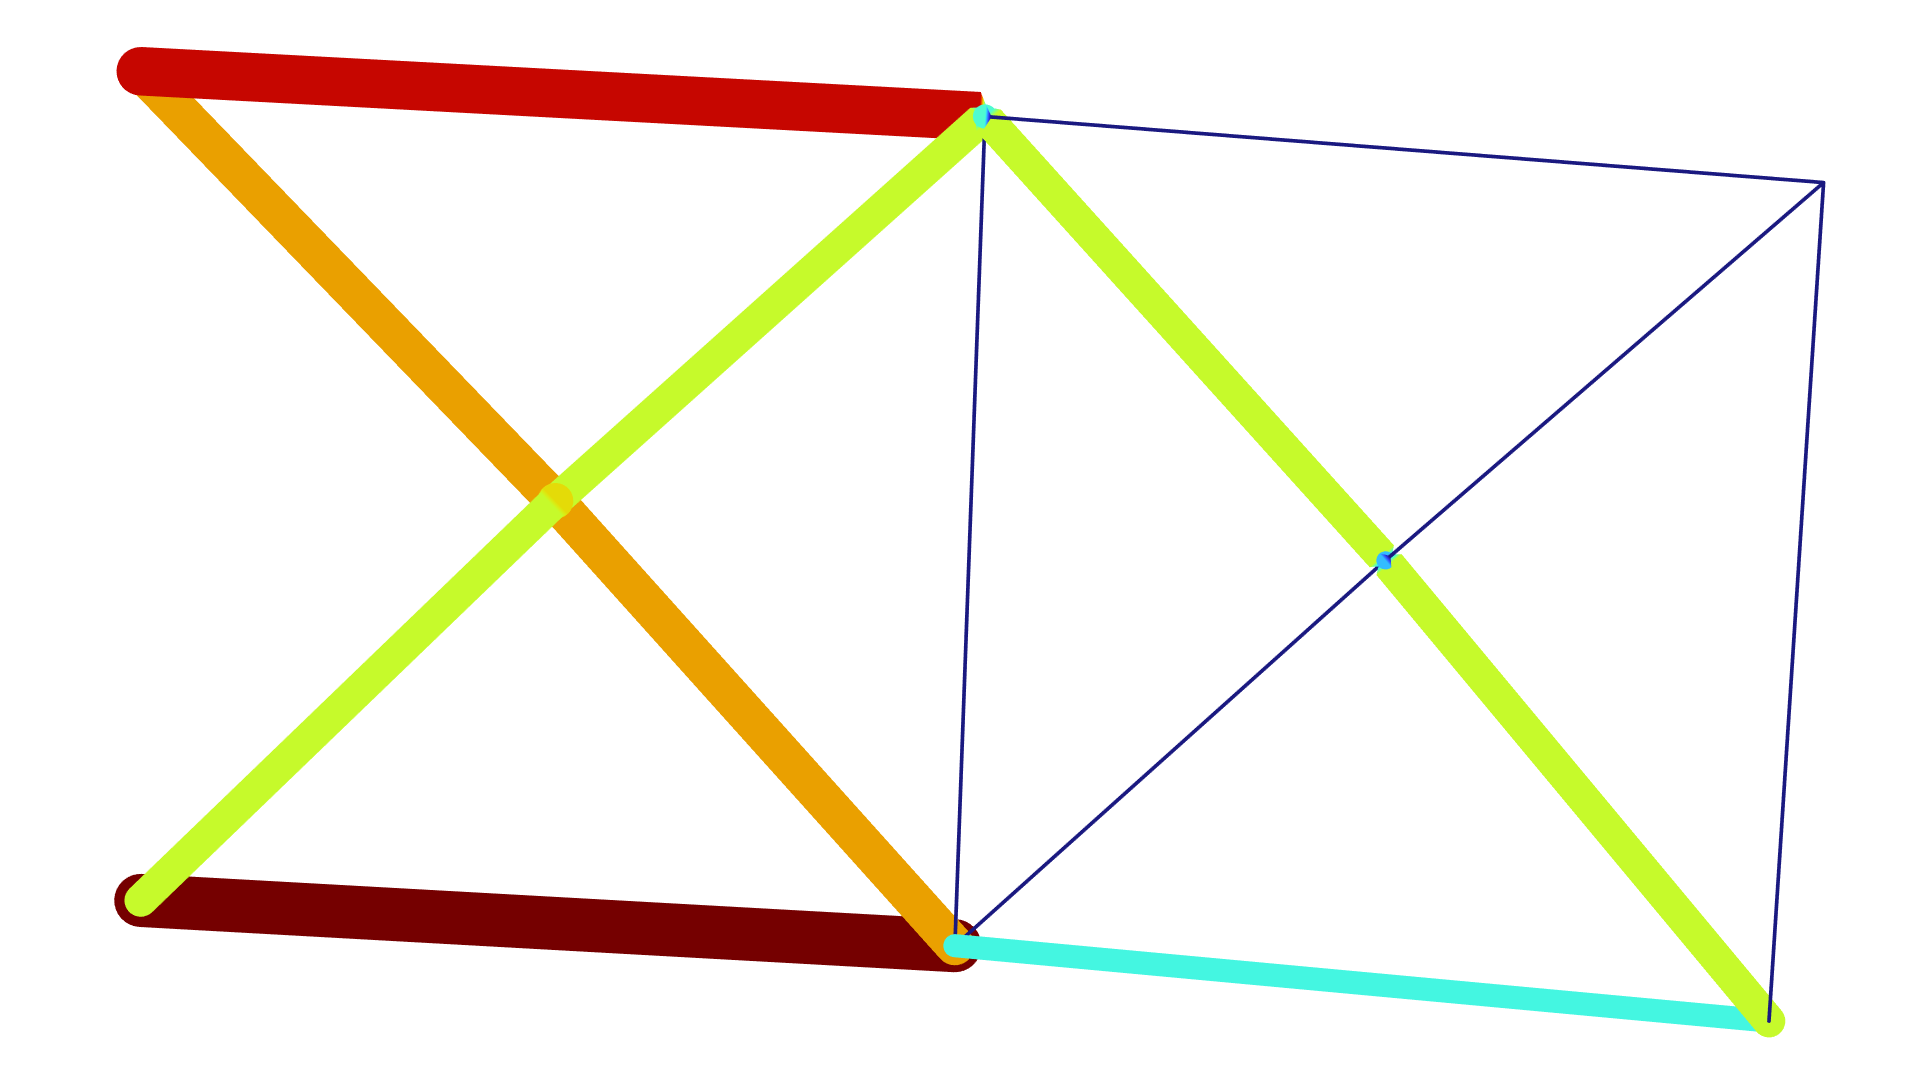 桁架结构的二维绘图，其中桁架半径以不同的颜色显示。